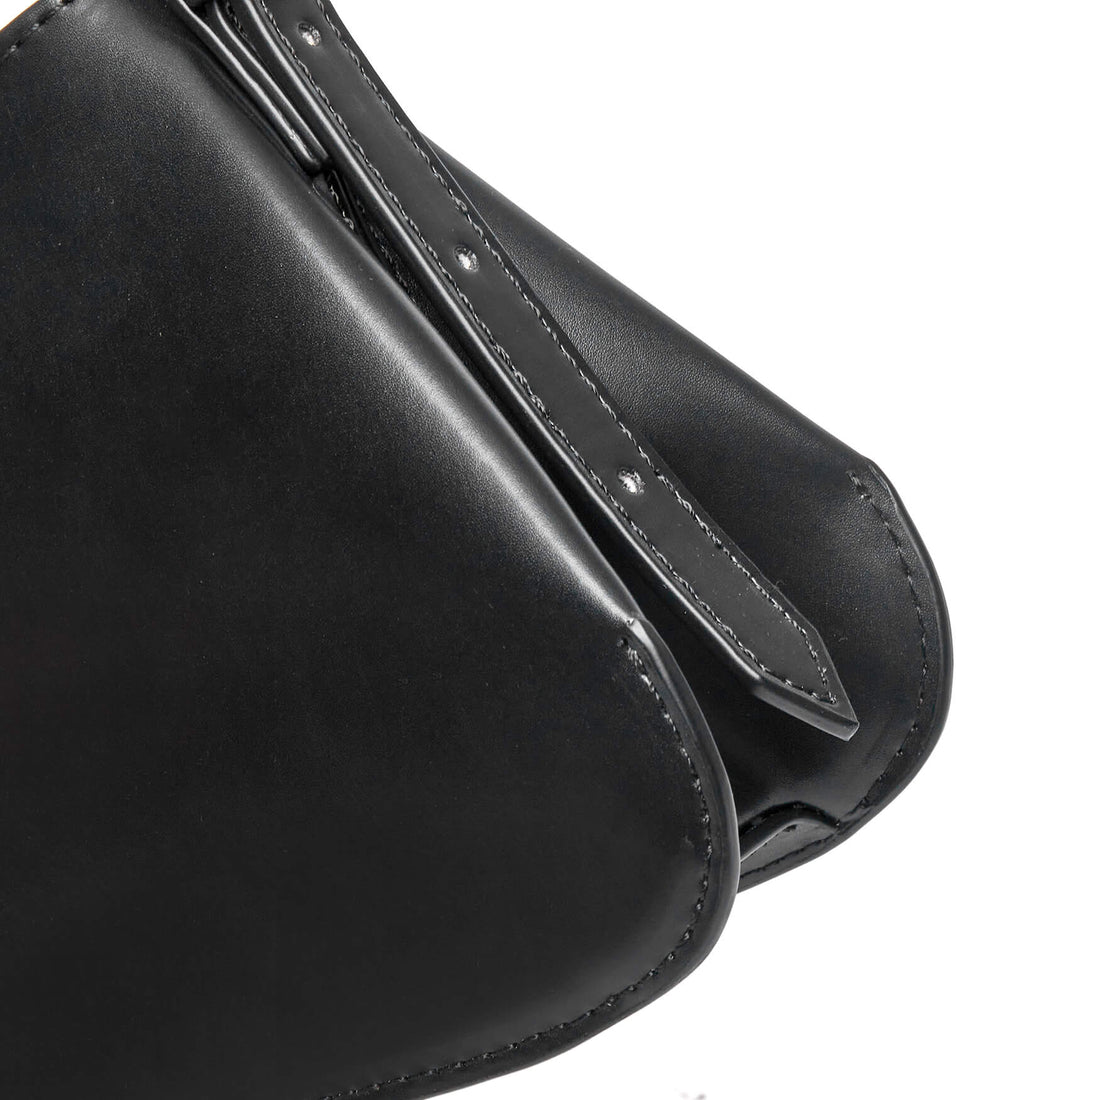 SINBONO Vegan Leather Hobo Bag Black - Animal Free Leather Bag